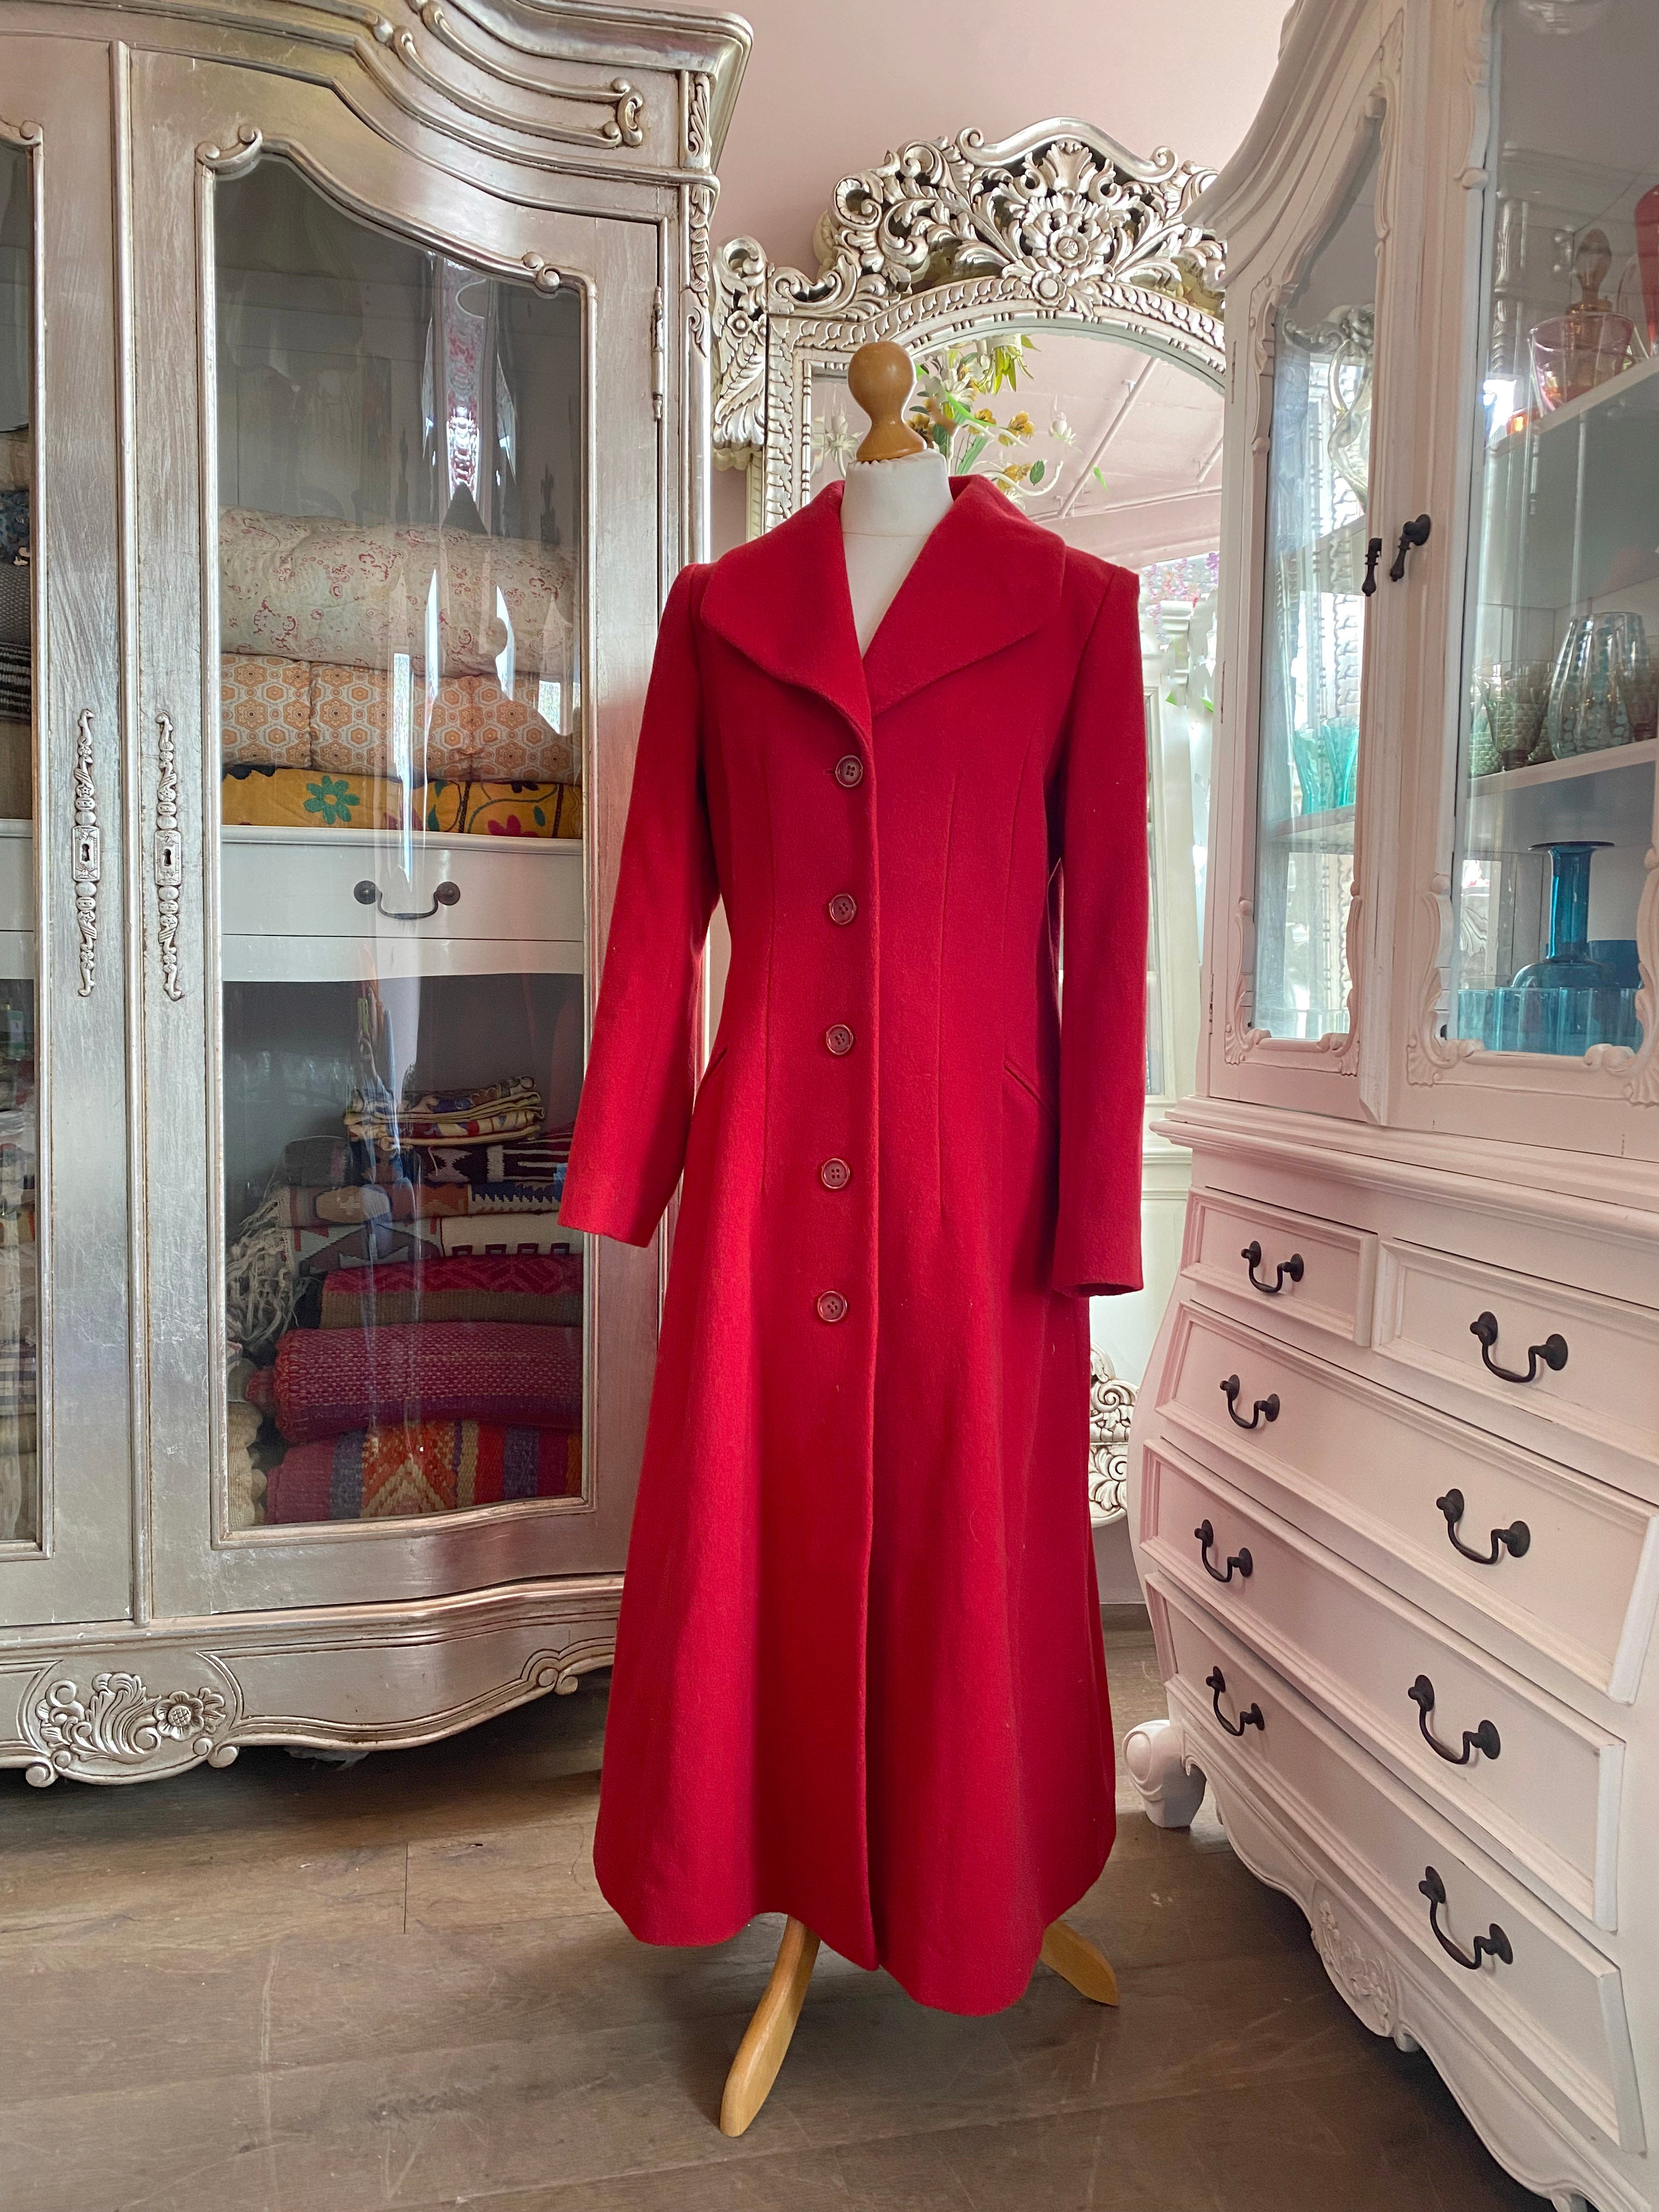 Berghaus Red Coat  